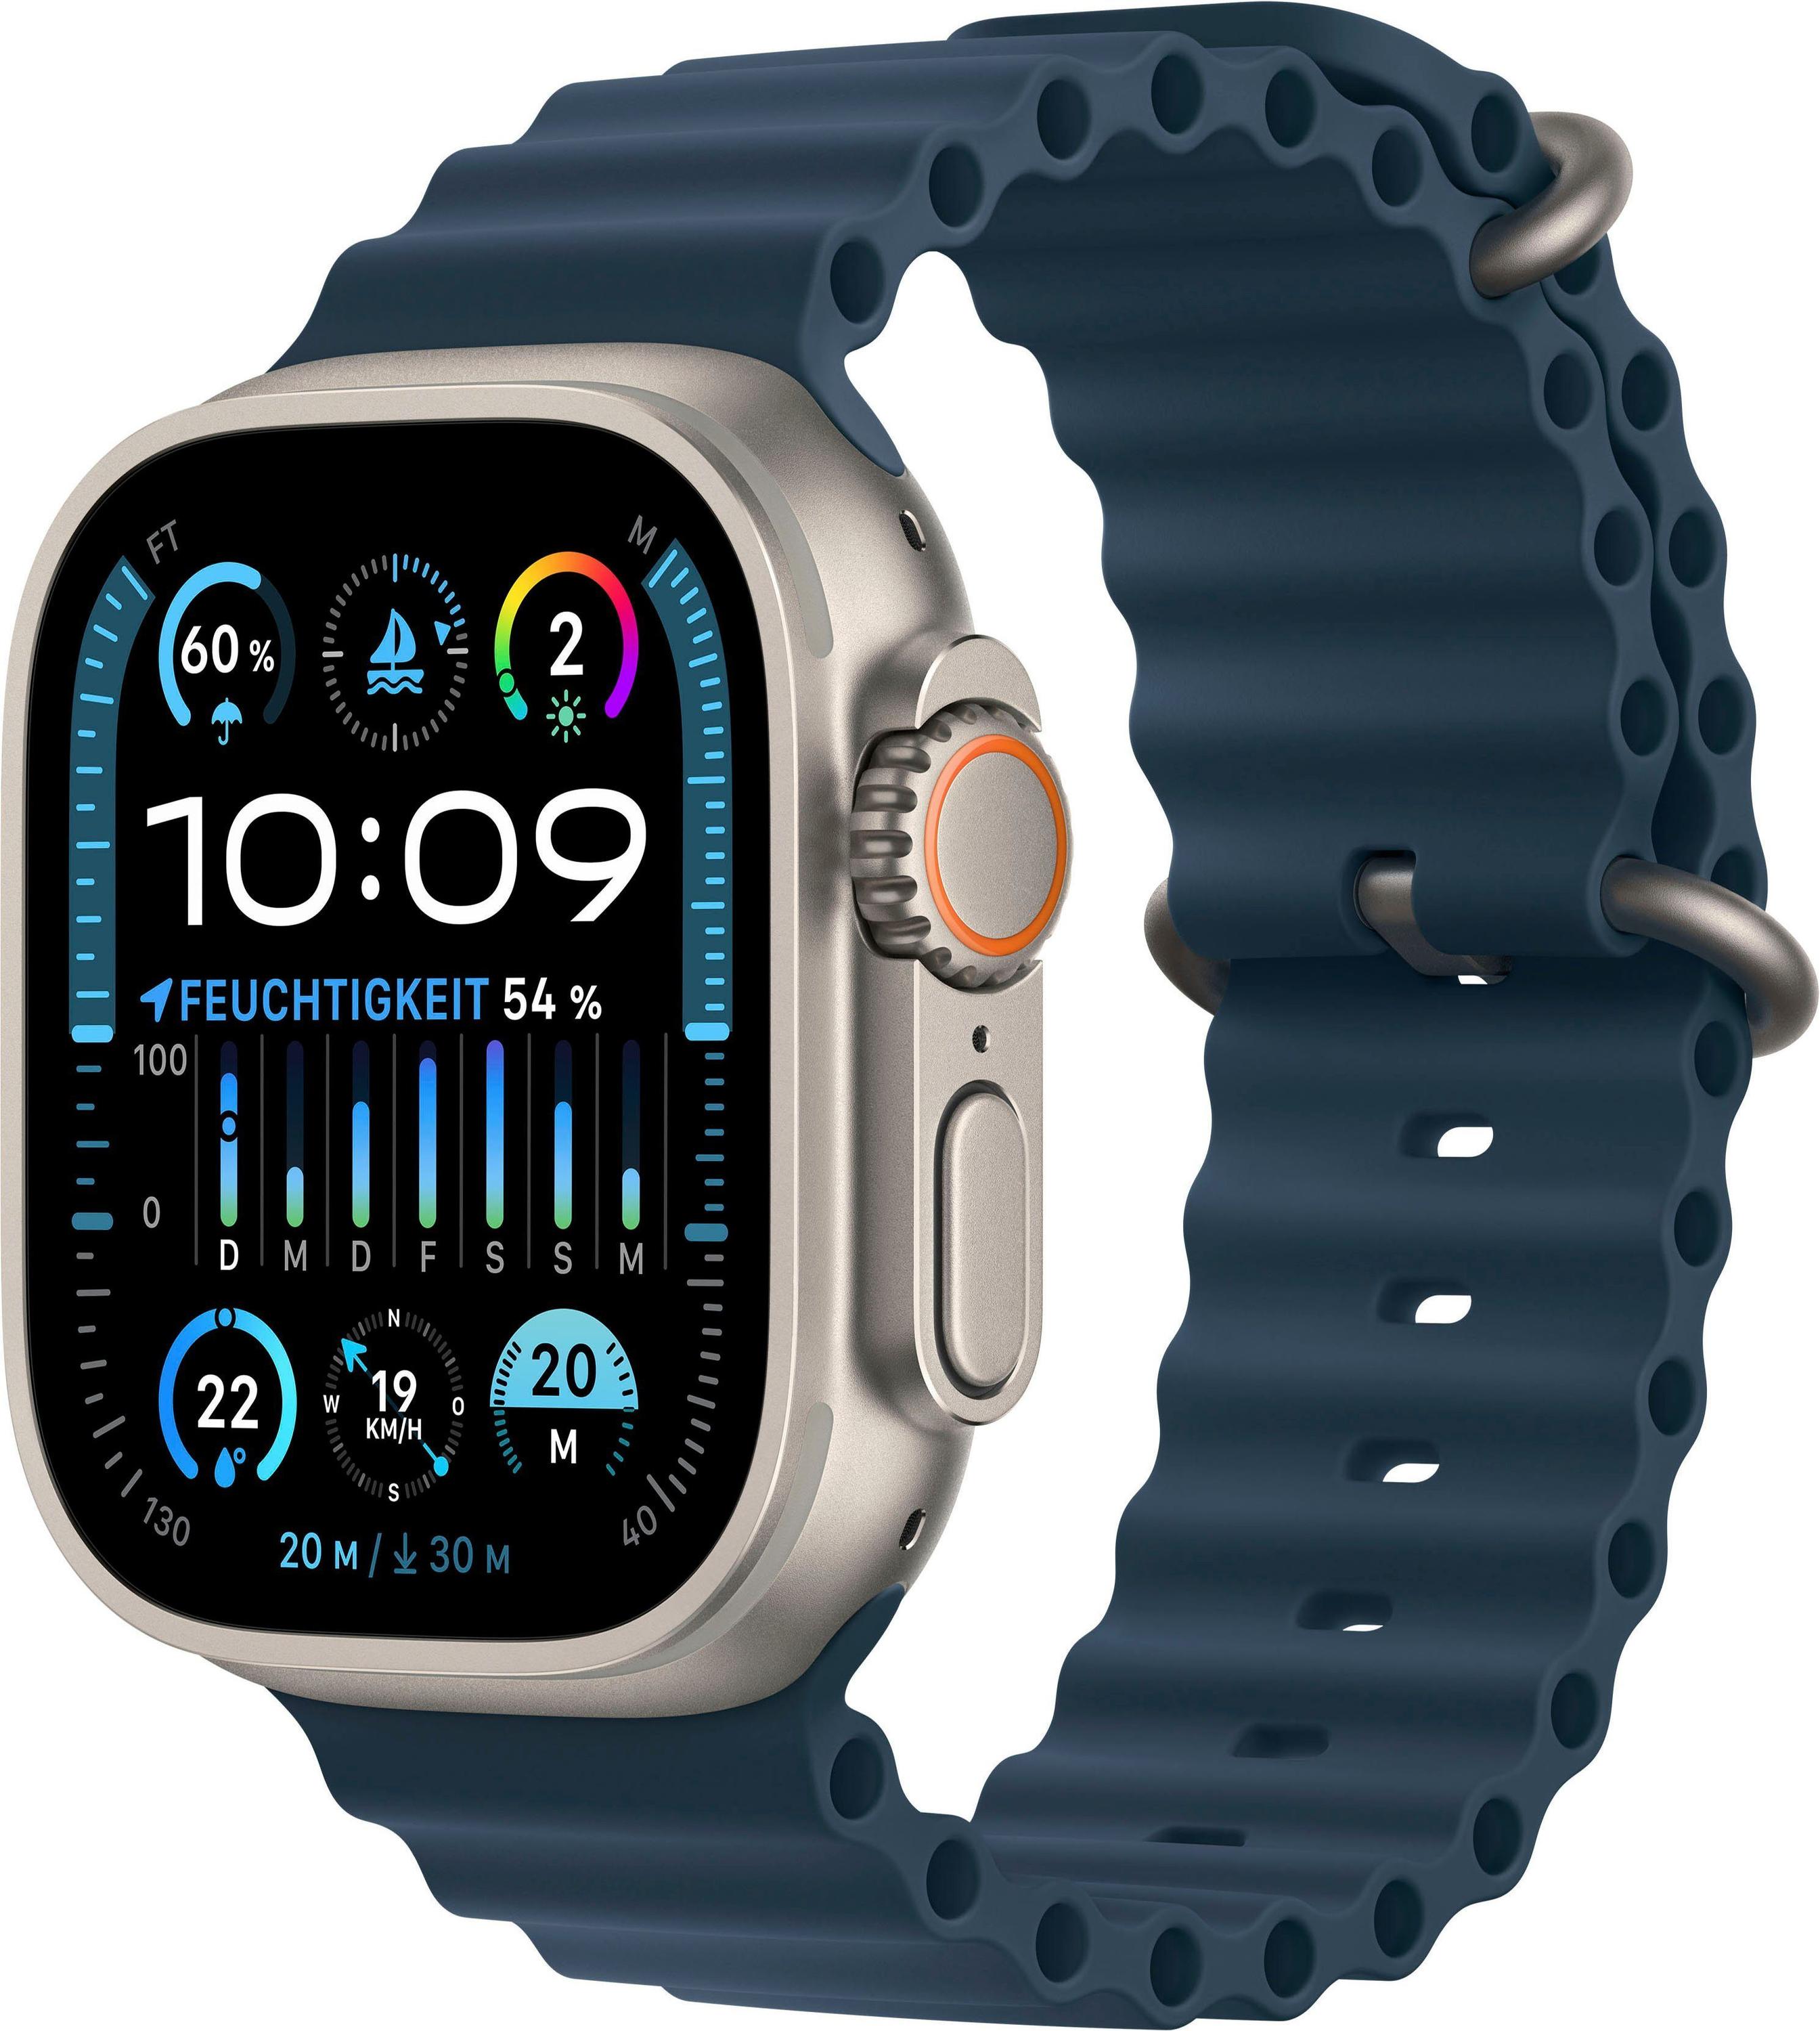 Titan 2 Watch Ultra Armband Test ab 819,00 Apple Ocean Blau € -